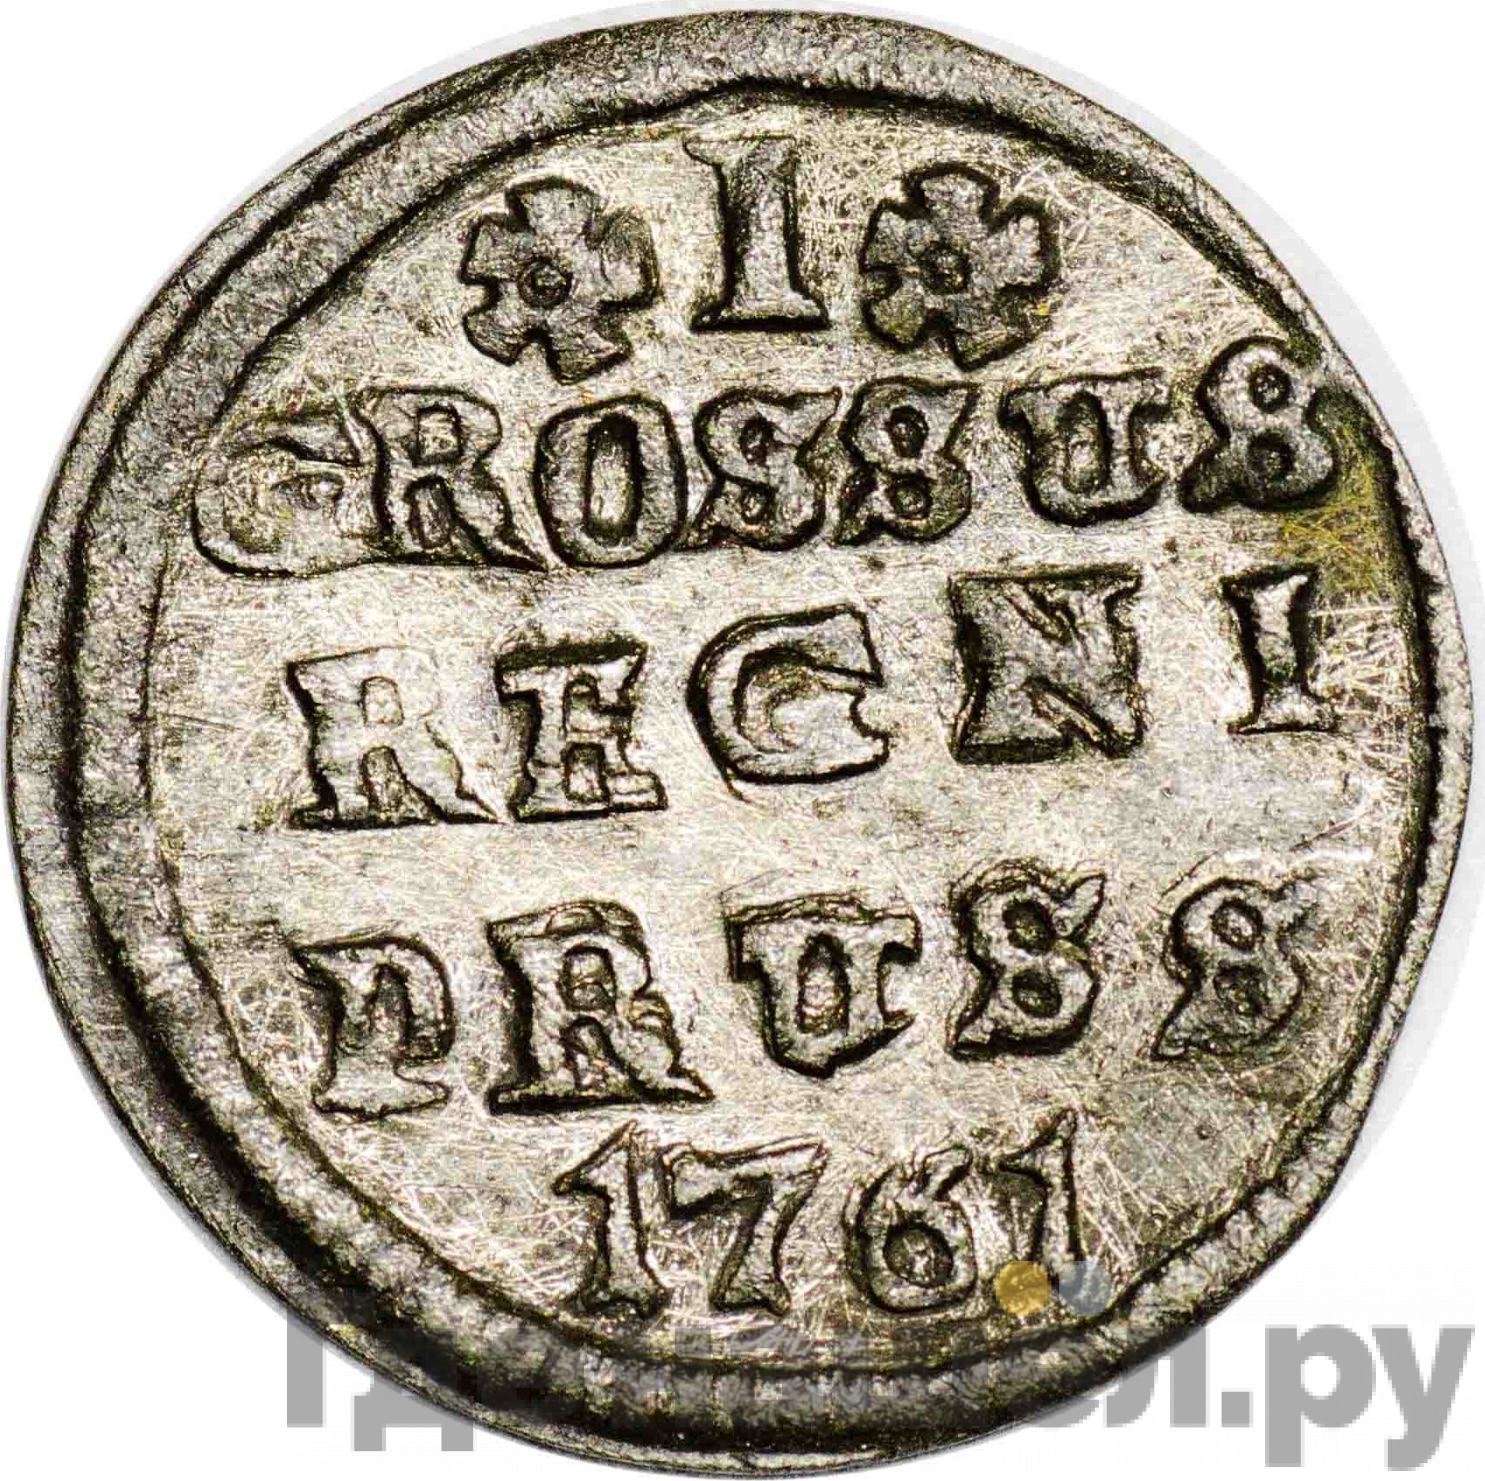 1 грош 1761 года Для Пруссии